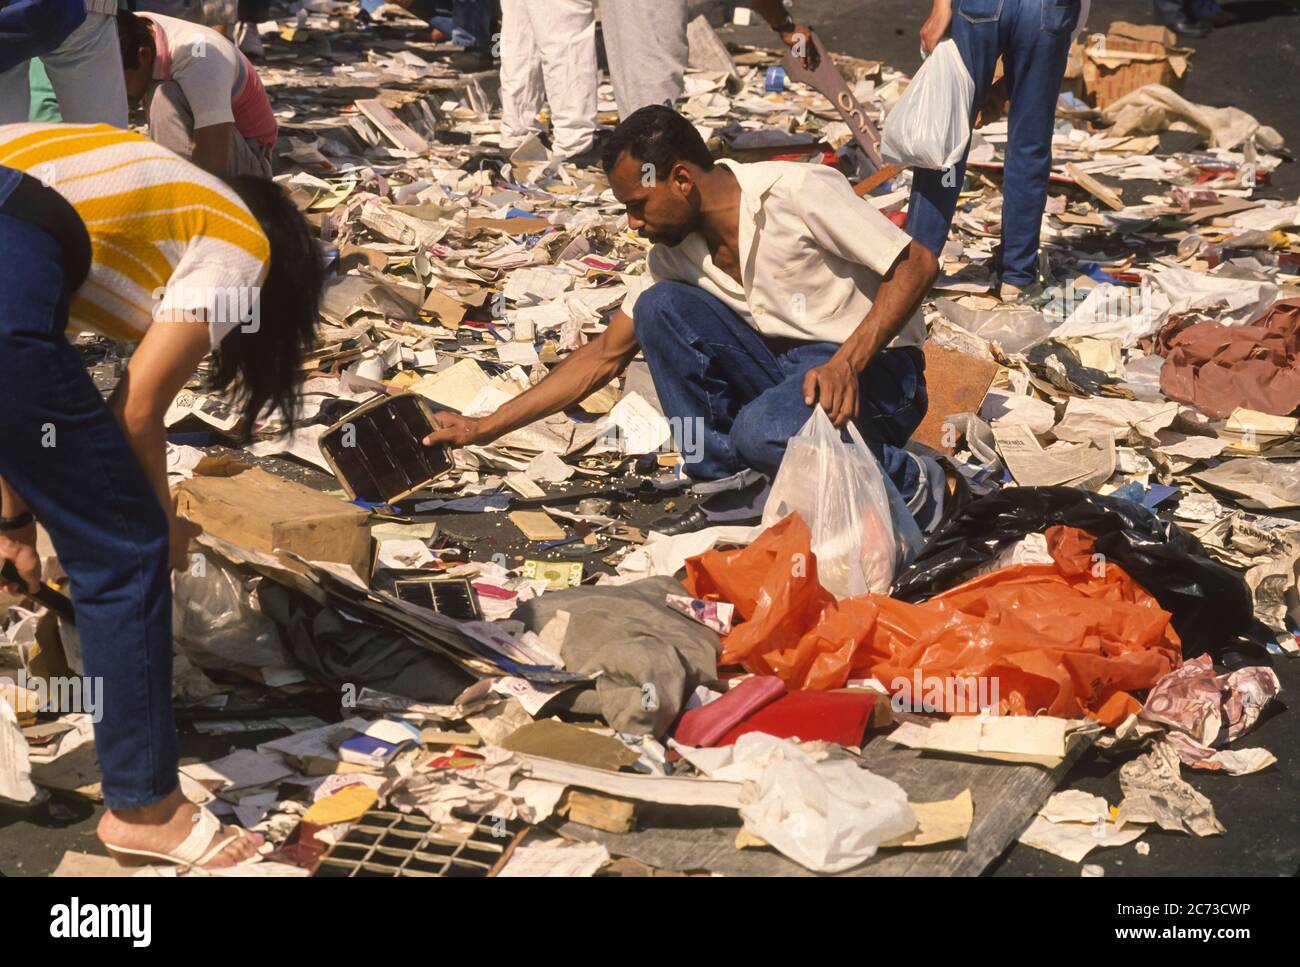 CARACAS, VENEZUELA, MÄRZ 2,1989 - Menschen, die Reste von geplünderten Juweliergeschäft während des Ausnahmezustands von Unruhen in Caracas, bekannt als Caracazo. Stockfoto